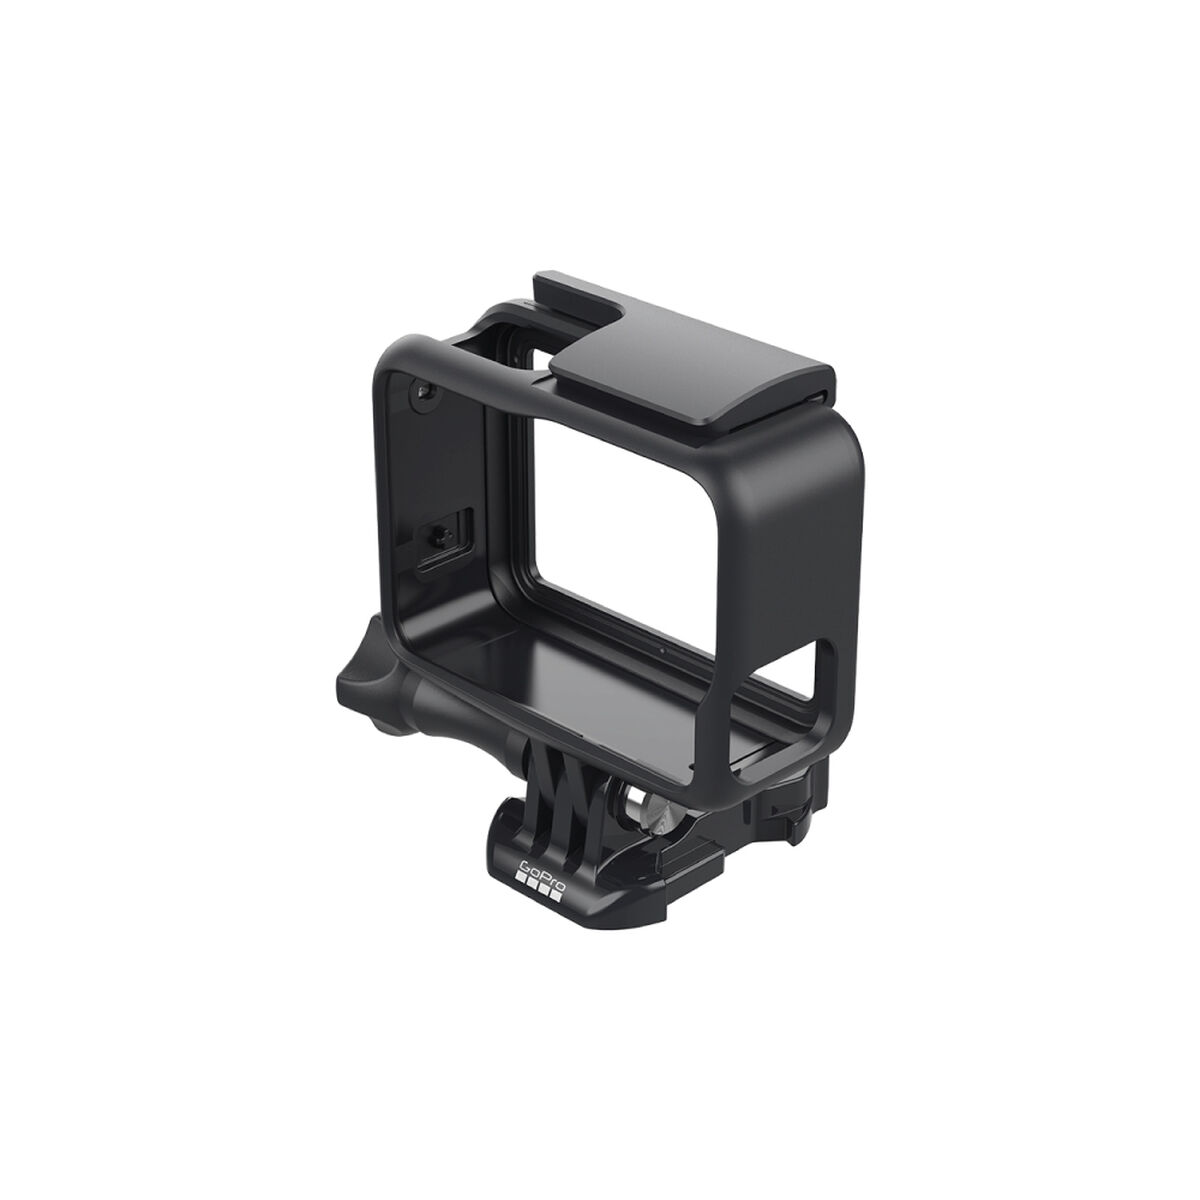 Carcasa Frame para GoPro HERO7 Black